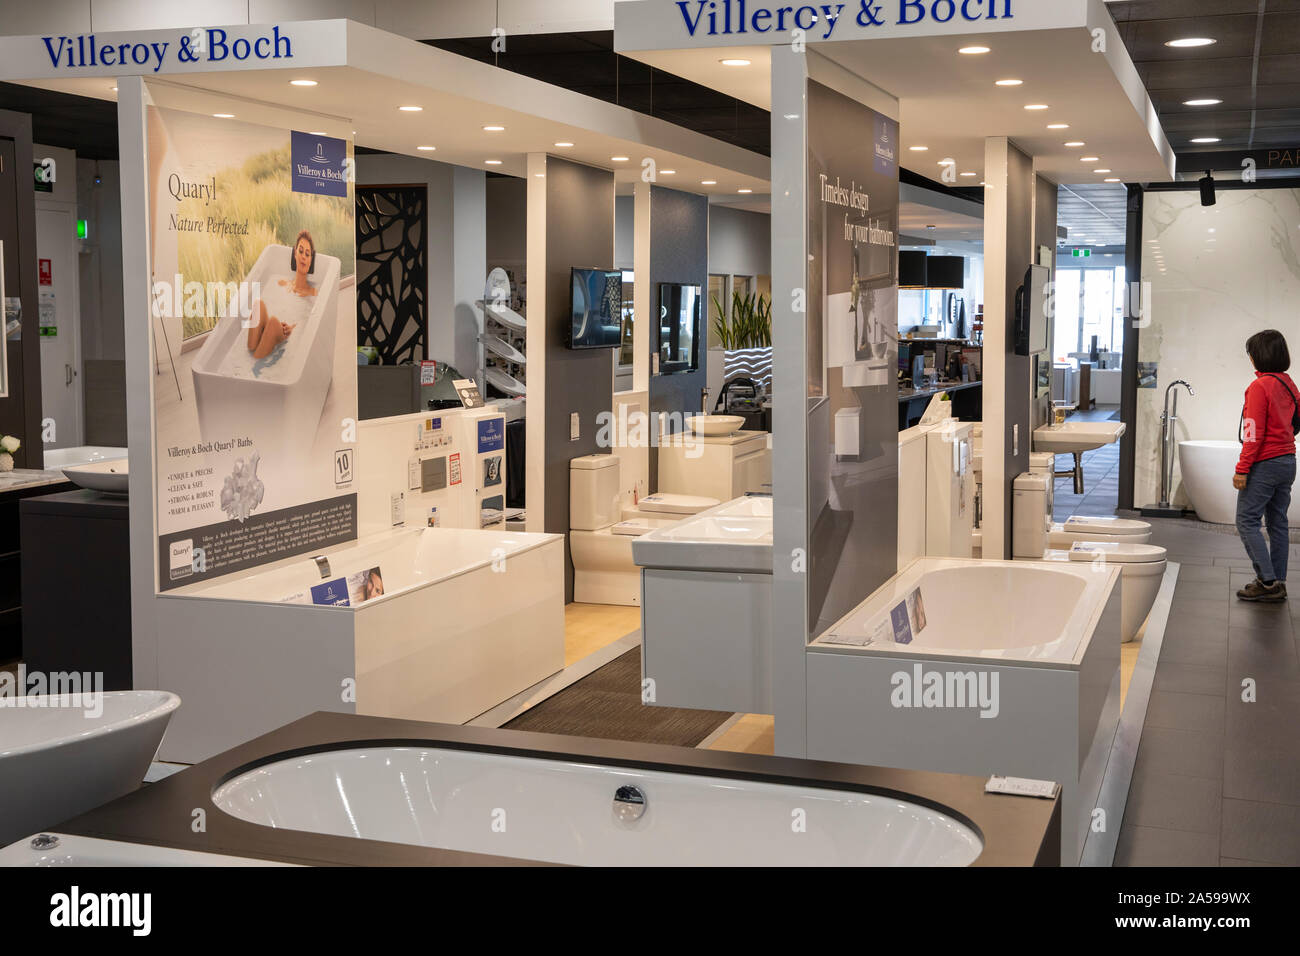 Salle de bains Villeroy et Boch et sanitaire sur l'affichage dans un bain de Sydney, Australie showroom Banque D'Images